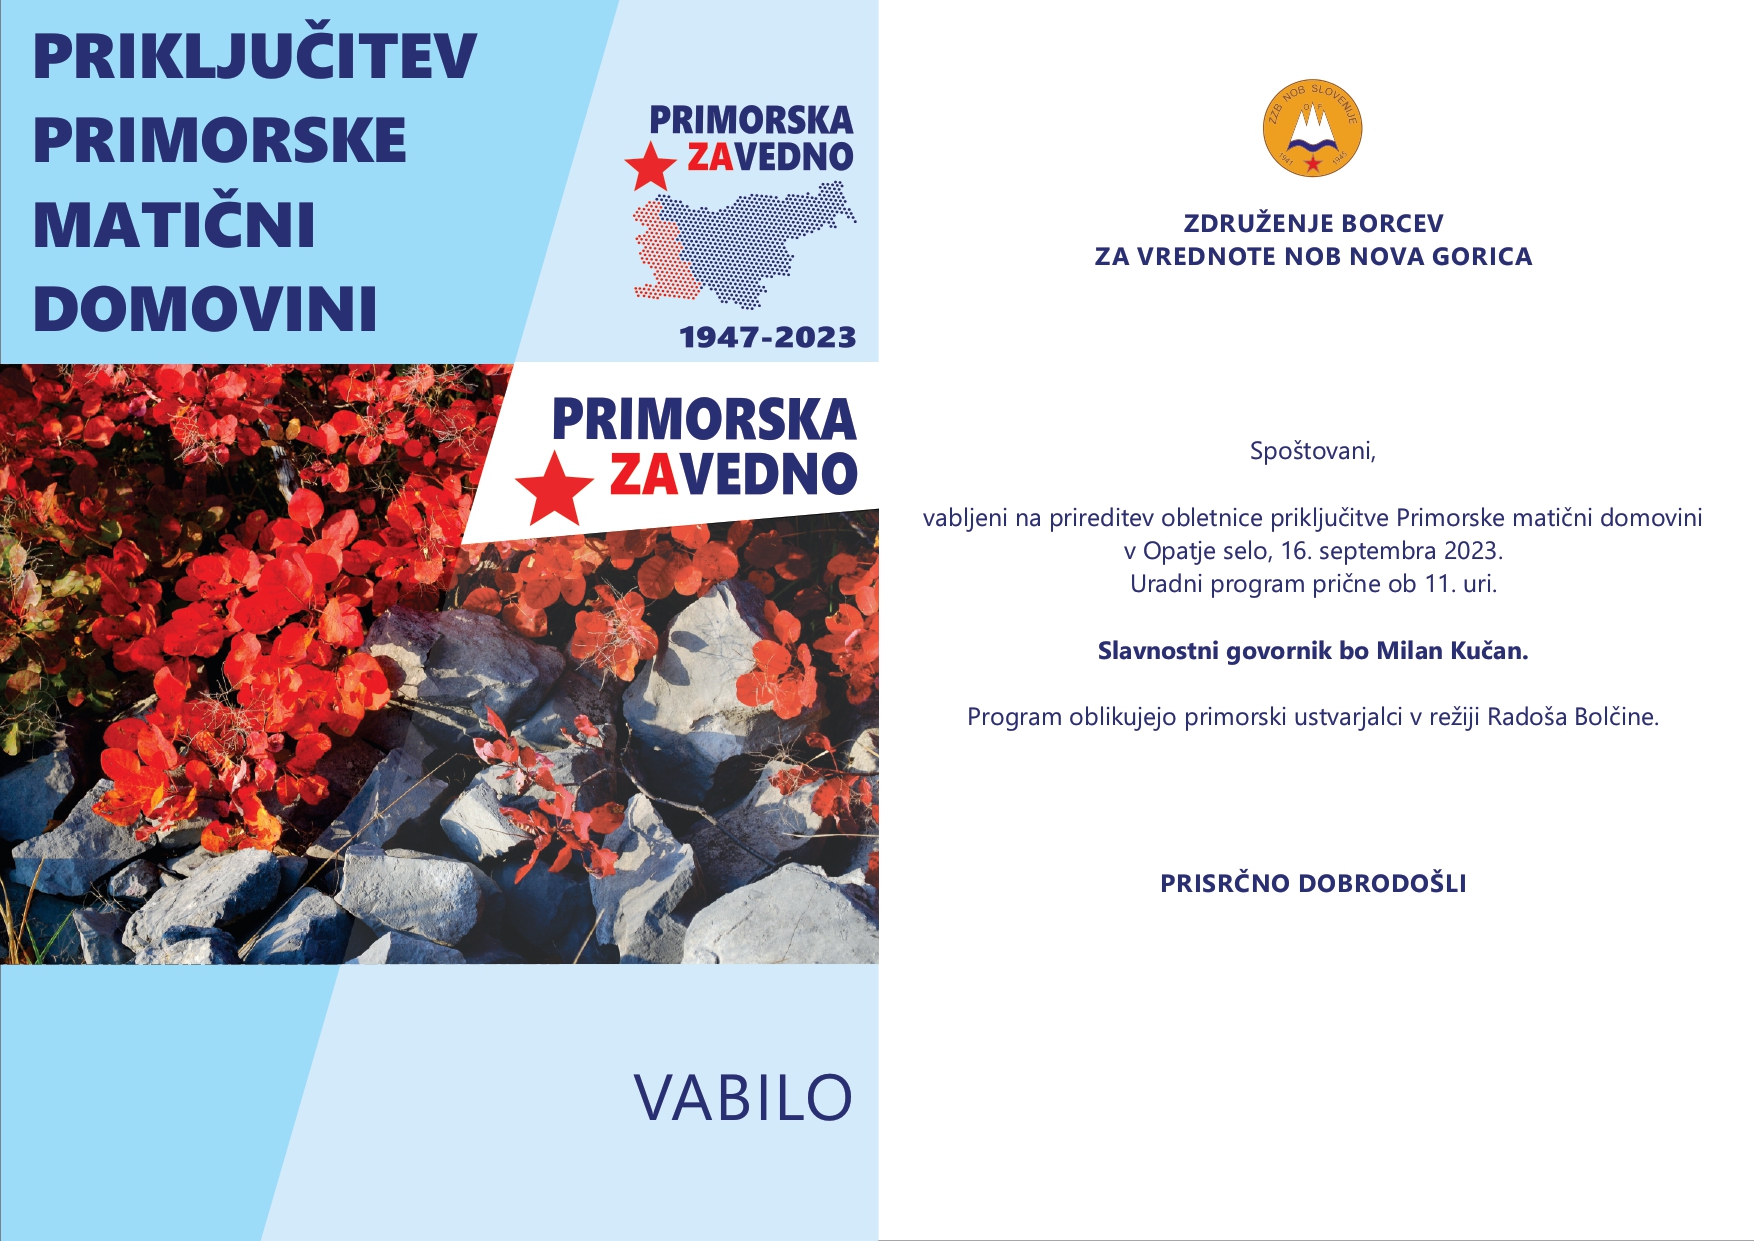 VABILO - Priključitev Primorske - Opatje selo 2023_page-0001 (1)